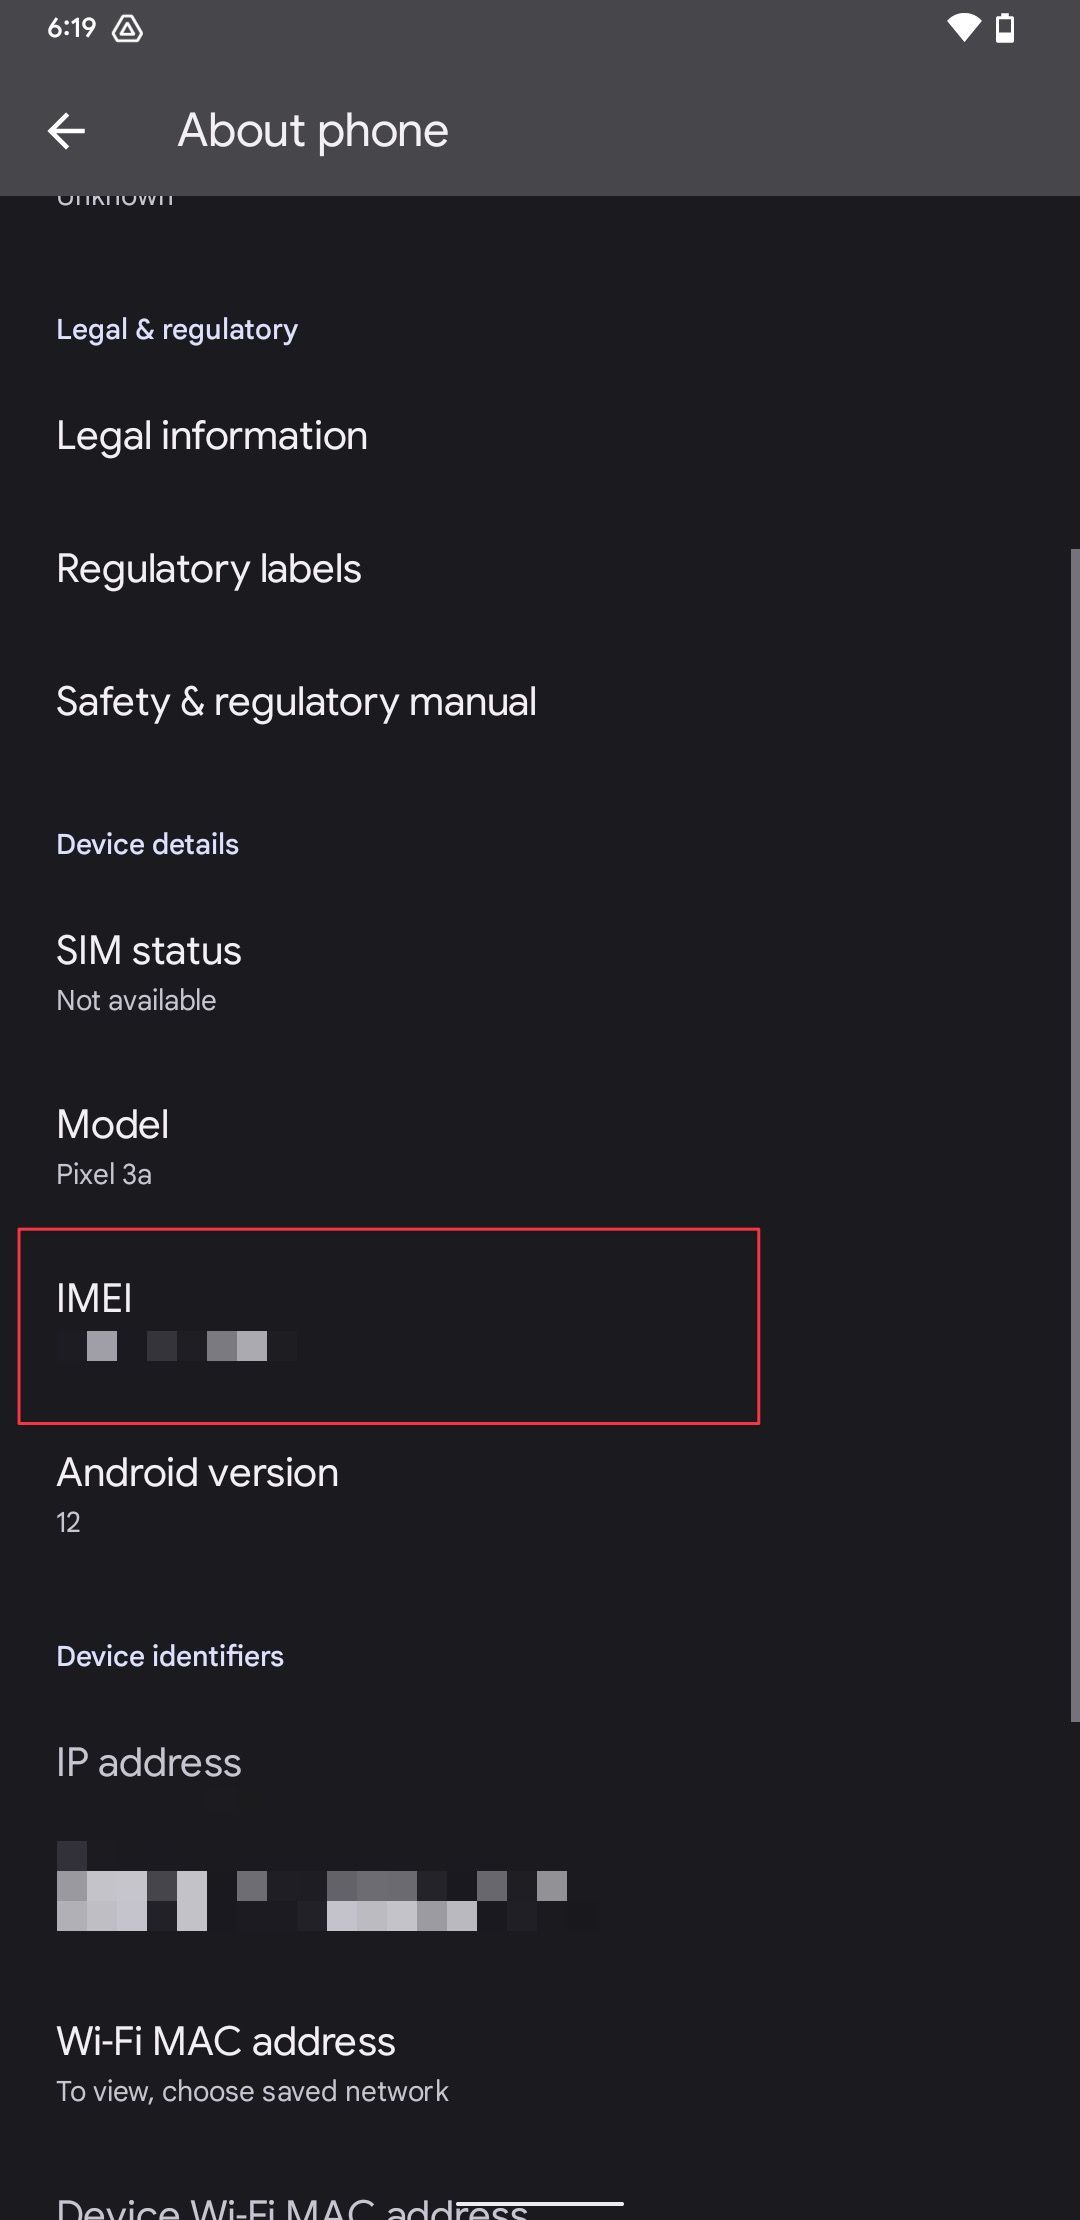 Captura de tela da página Sobre as configurações do telefone mostrando o número IMEI